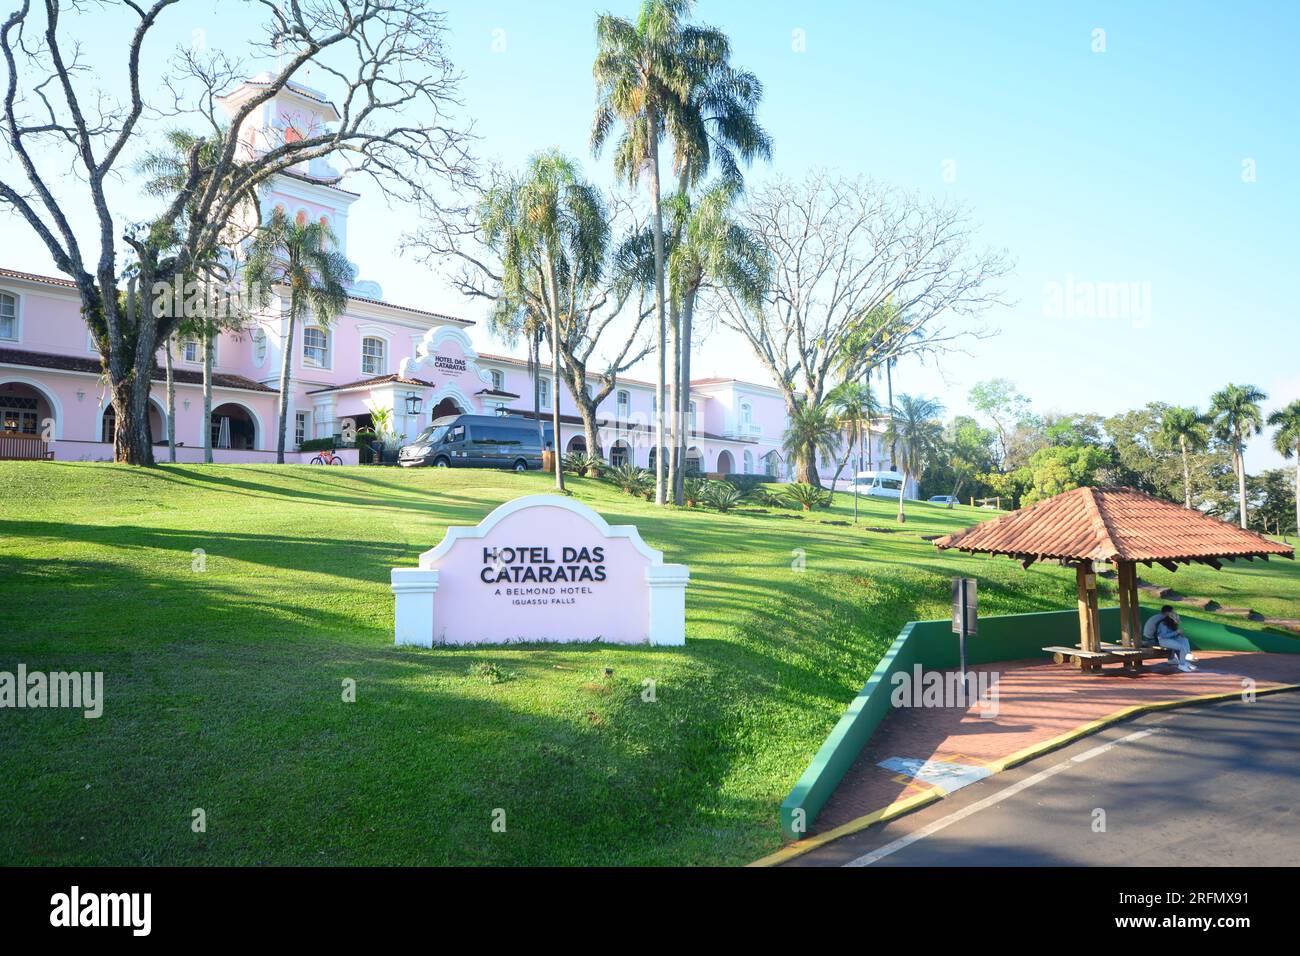 Fassade des Hotels das Cataratas do Iguacu, auch bekannt als Belmont Hotel mit Touristenbus. Stockfoto